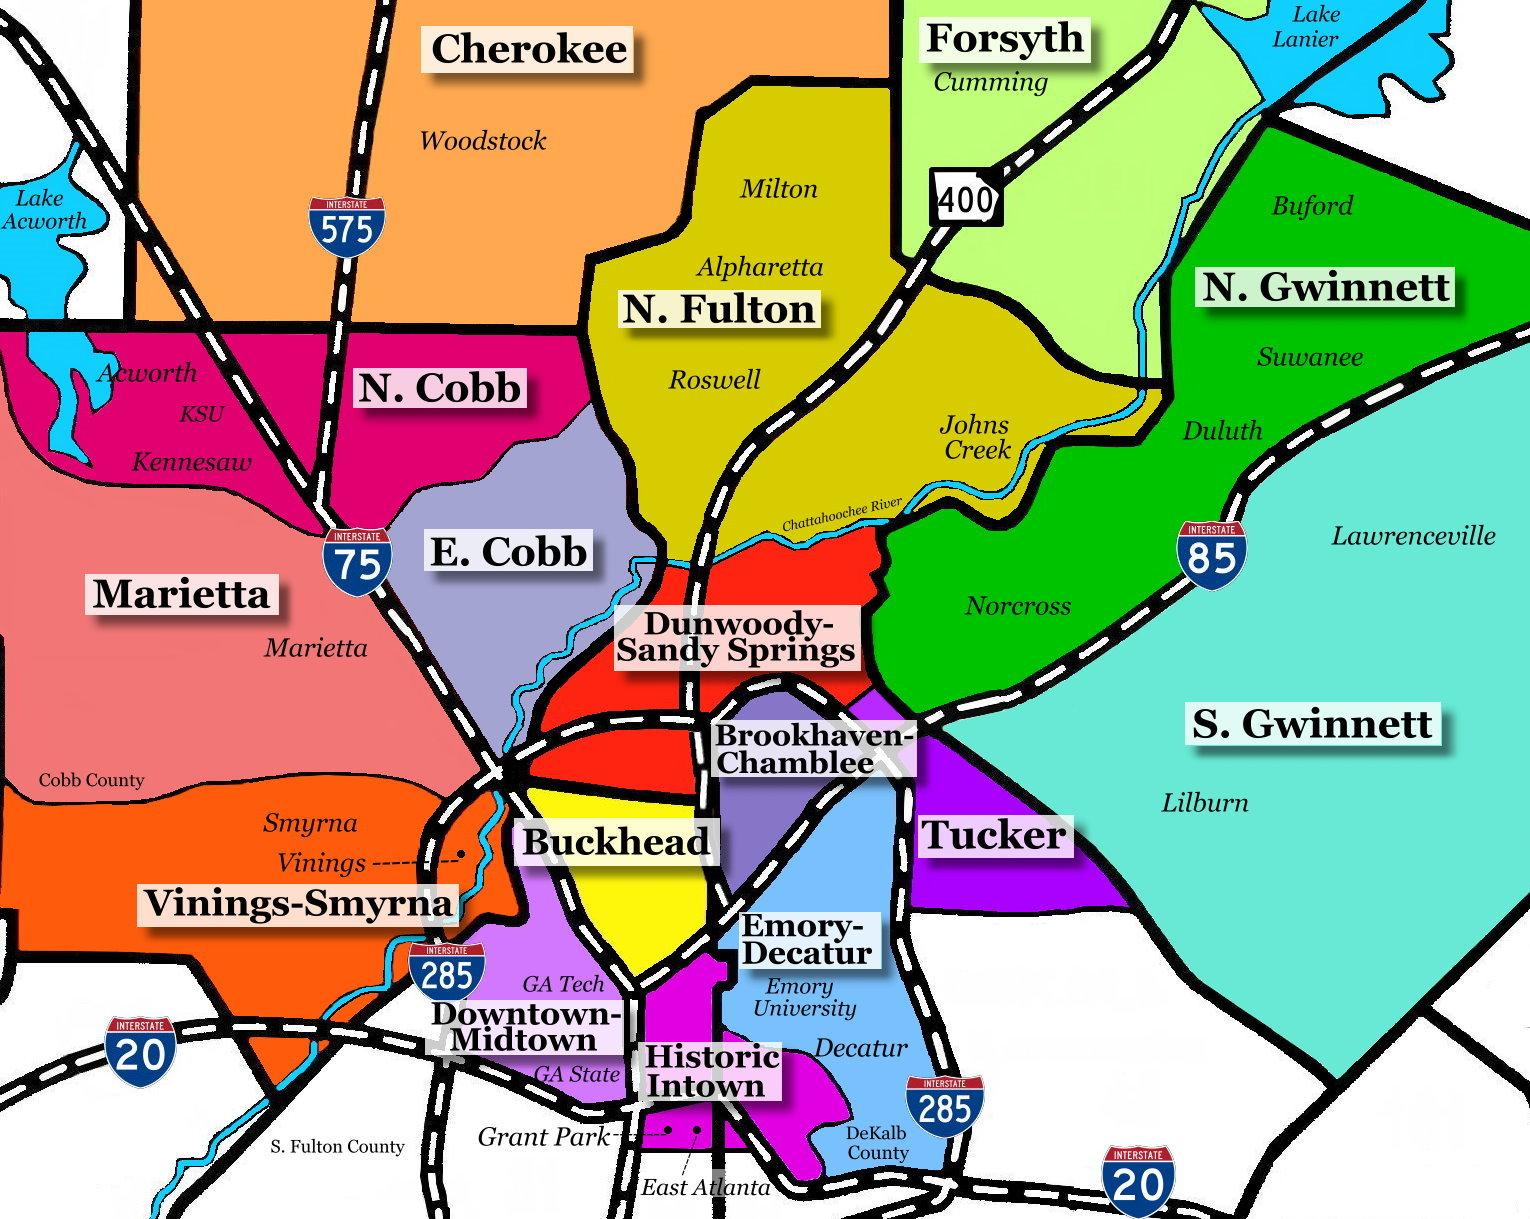 Atlanta And Vicinity Map 